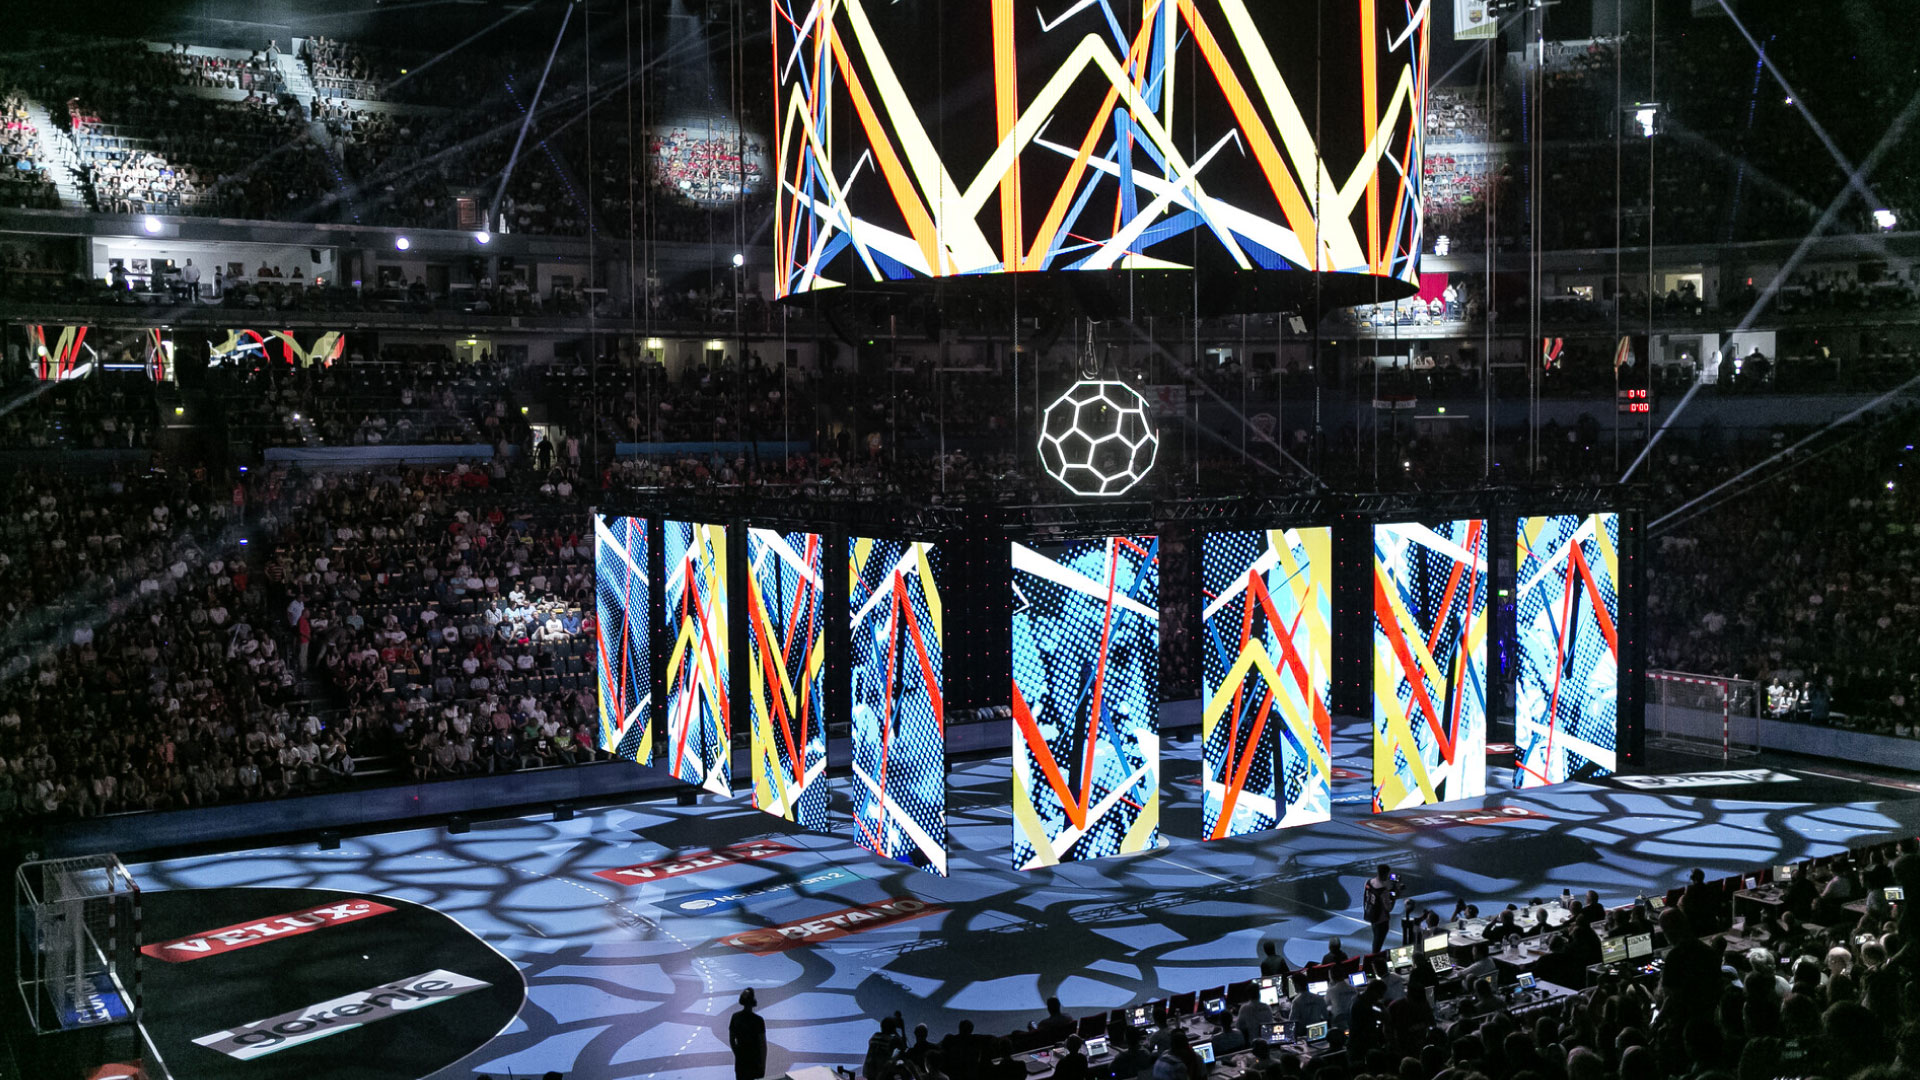 Finale der europäischen Handball-Champions-League in Köln, Lanxess Arena. PRG lieferte LED-Bildschirme für dieses Event.